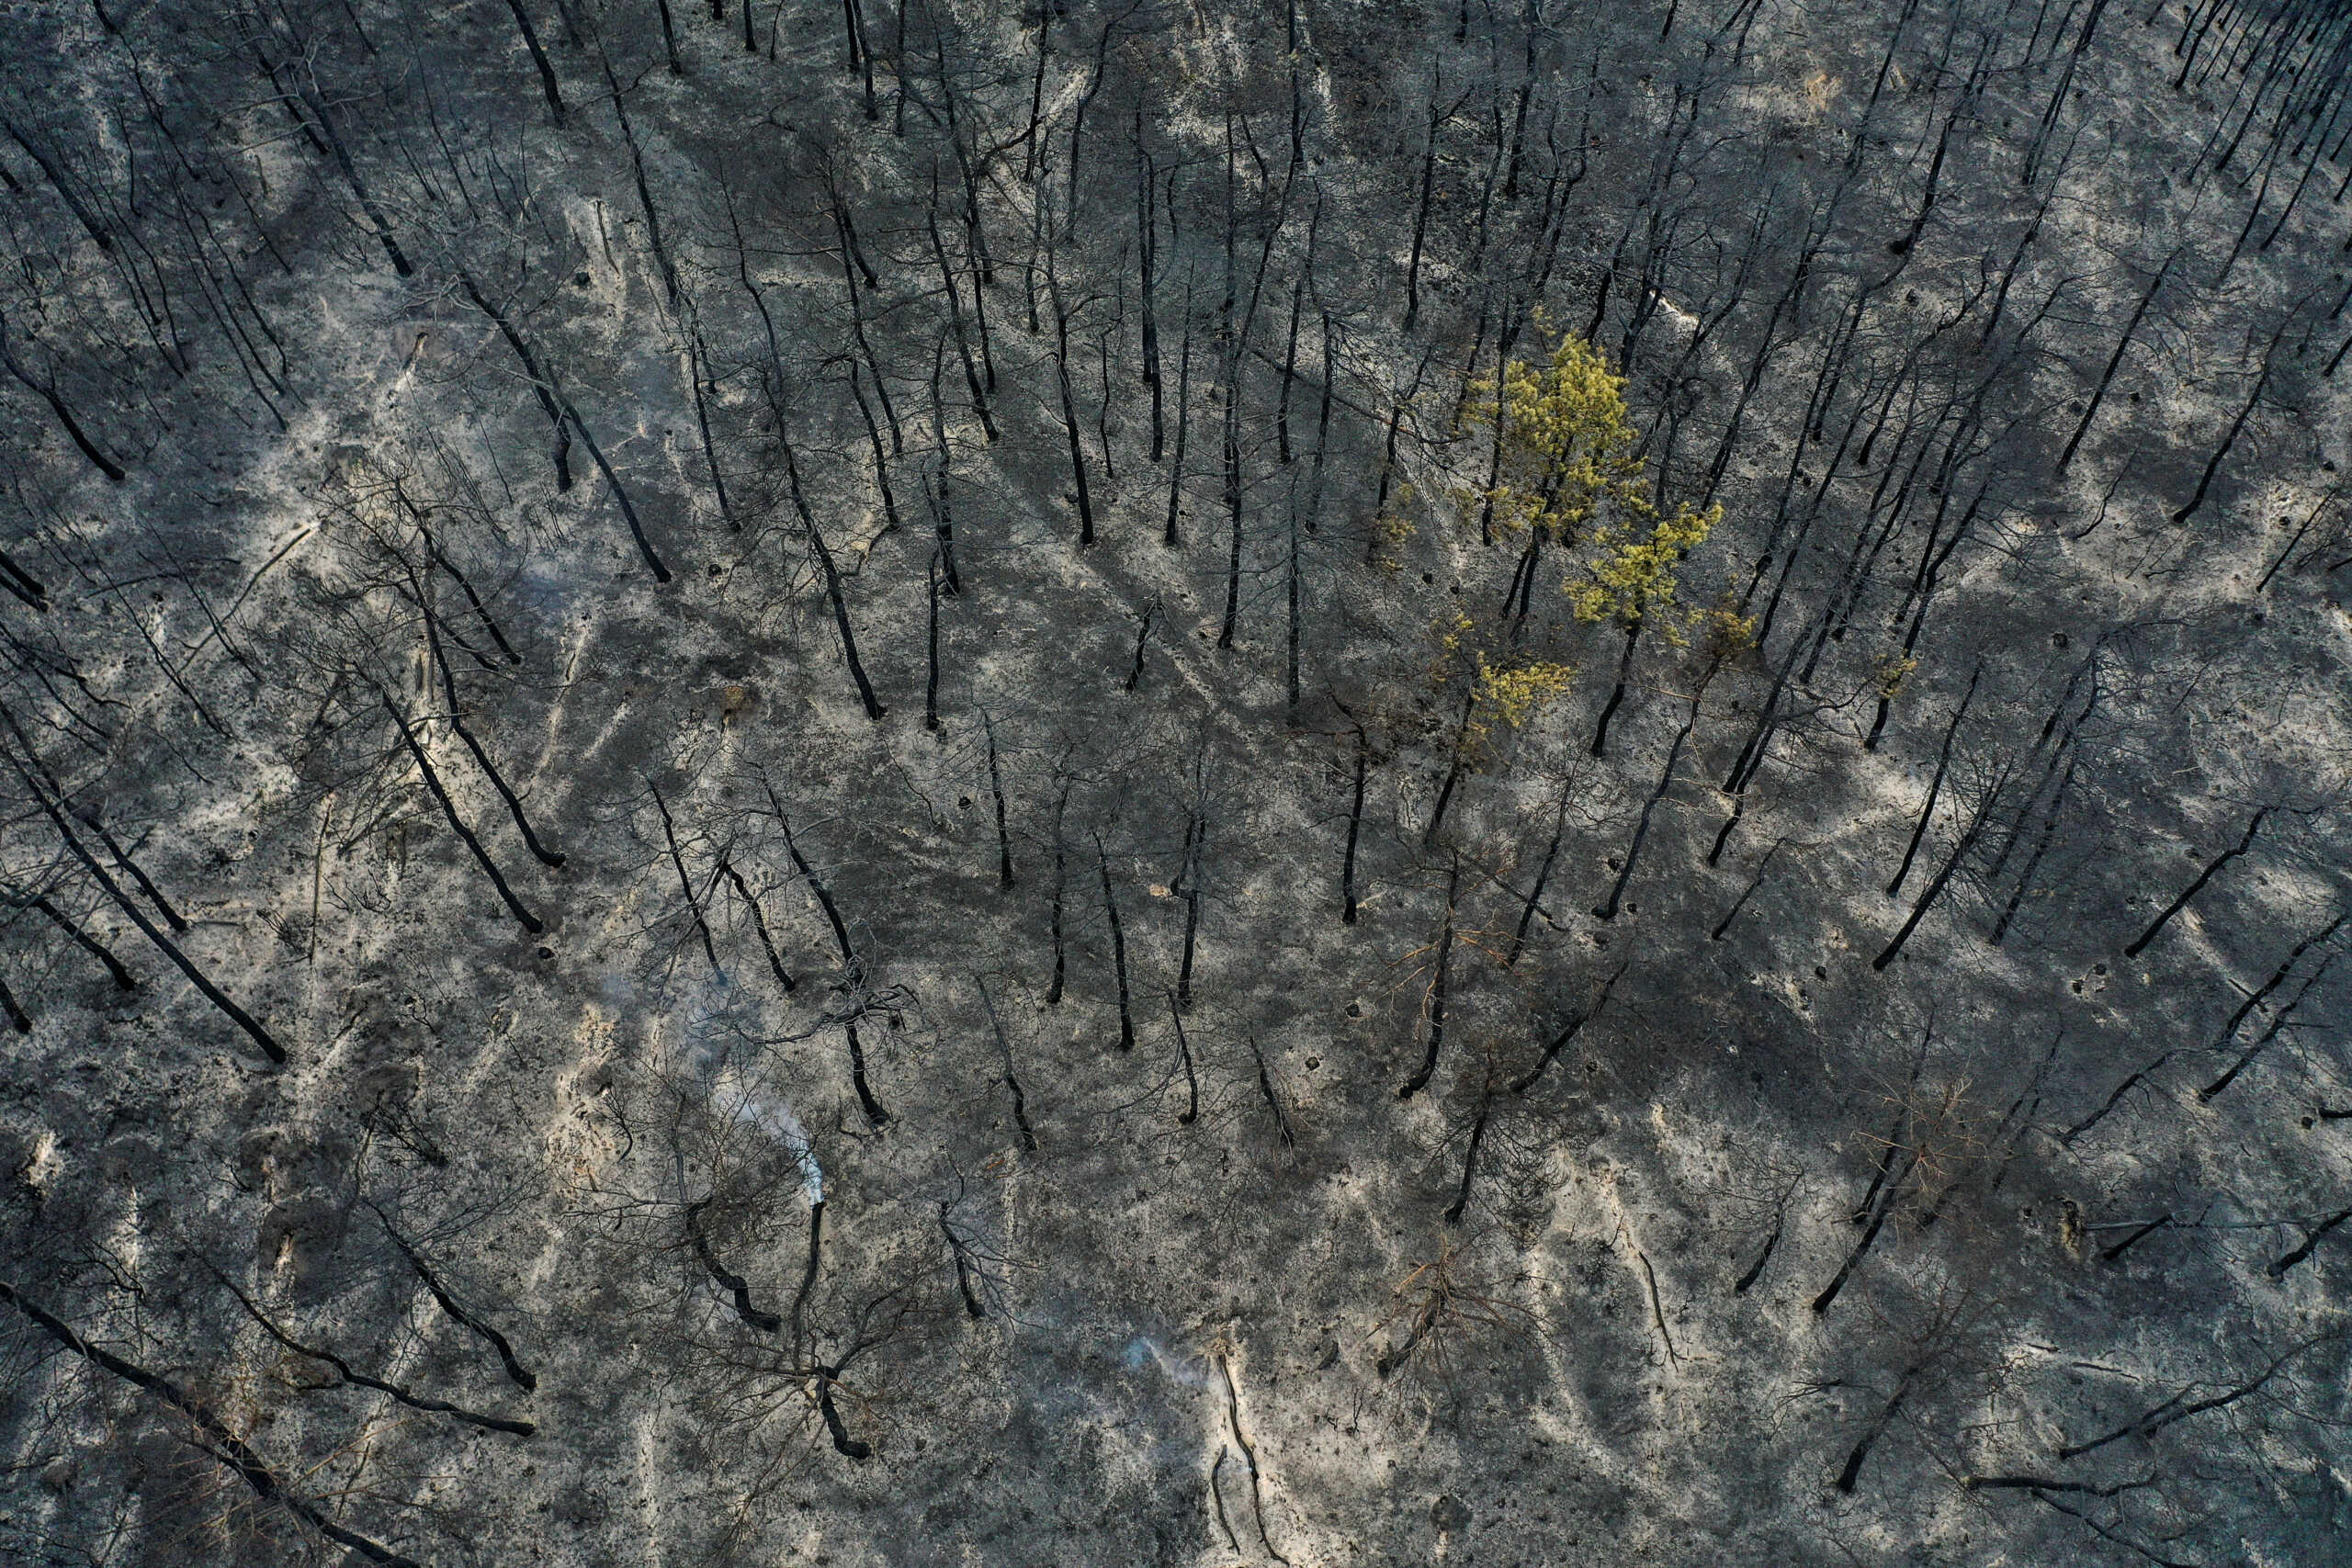 Φωτιά στη Δαδιά: «Δακρύζω με τη μαυρίλα – Κάηκε το 23% του δάσους» λέει ο δήμαρχος